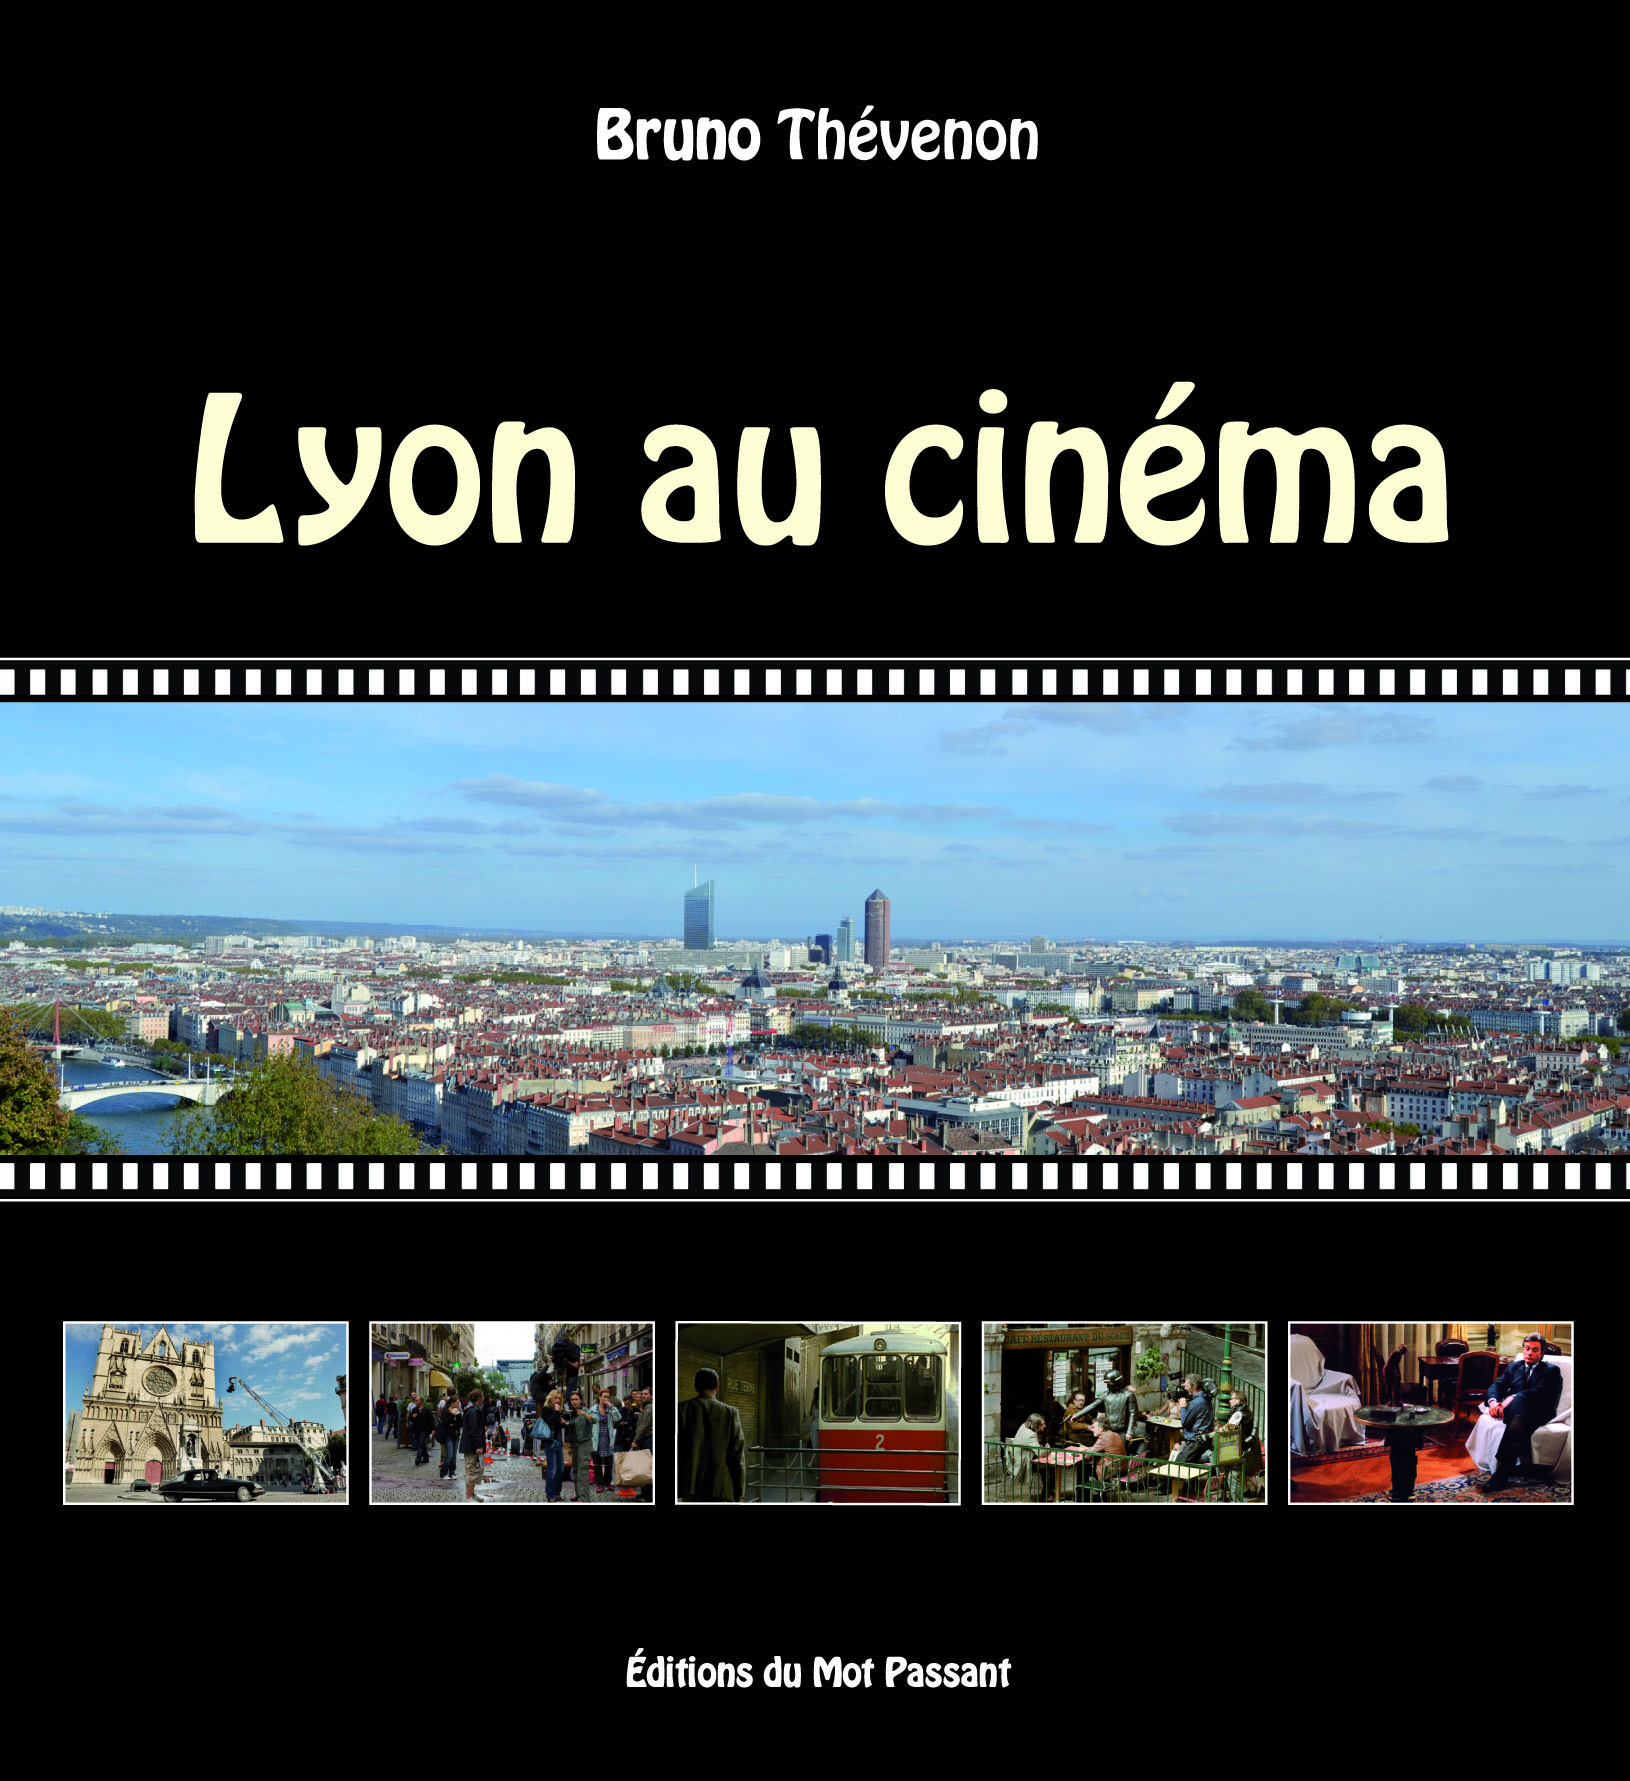 Lyon au cinéma